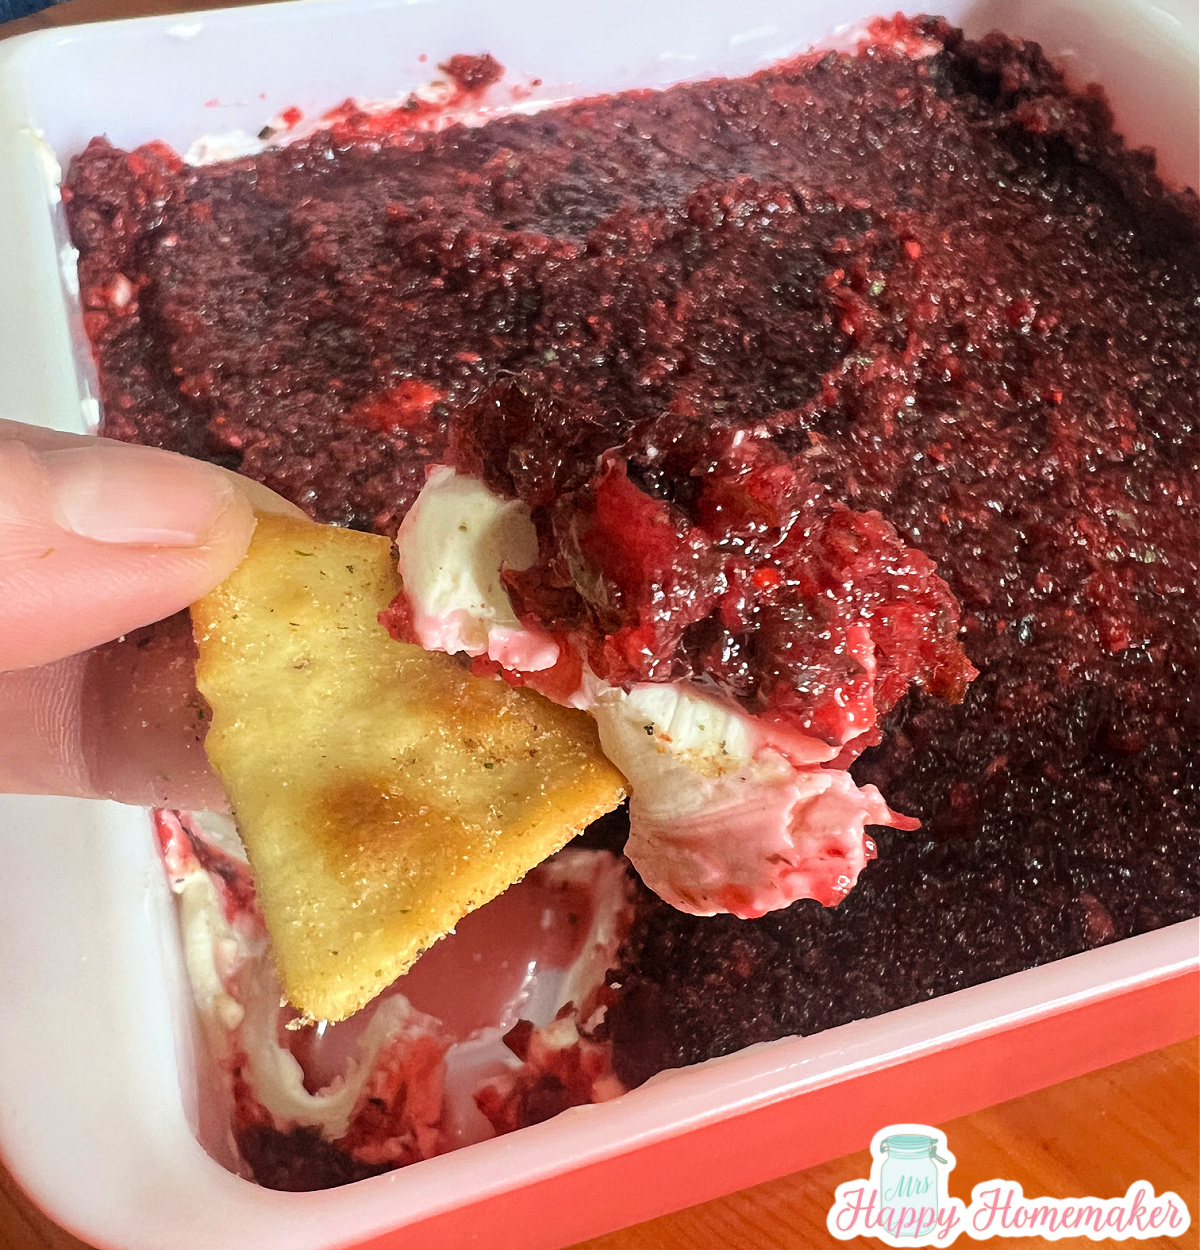 Cranberry jalapeno roomkaasdip op een cracker met daaronder een roze vierkante schaal vol dip 